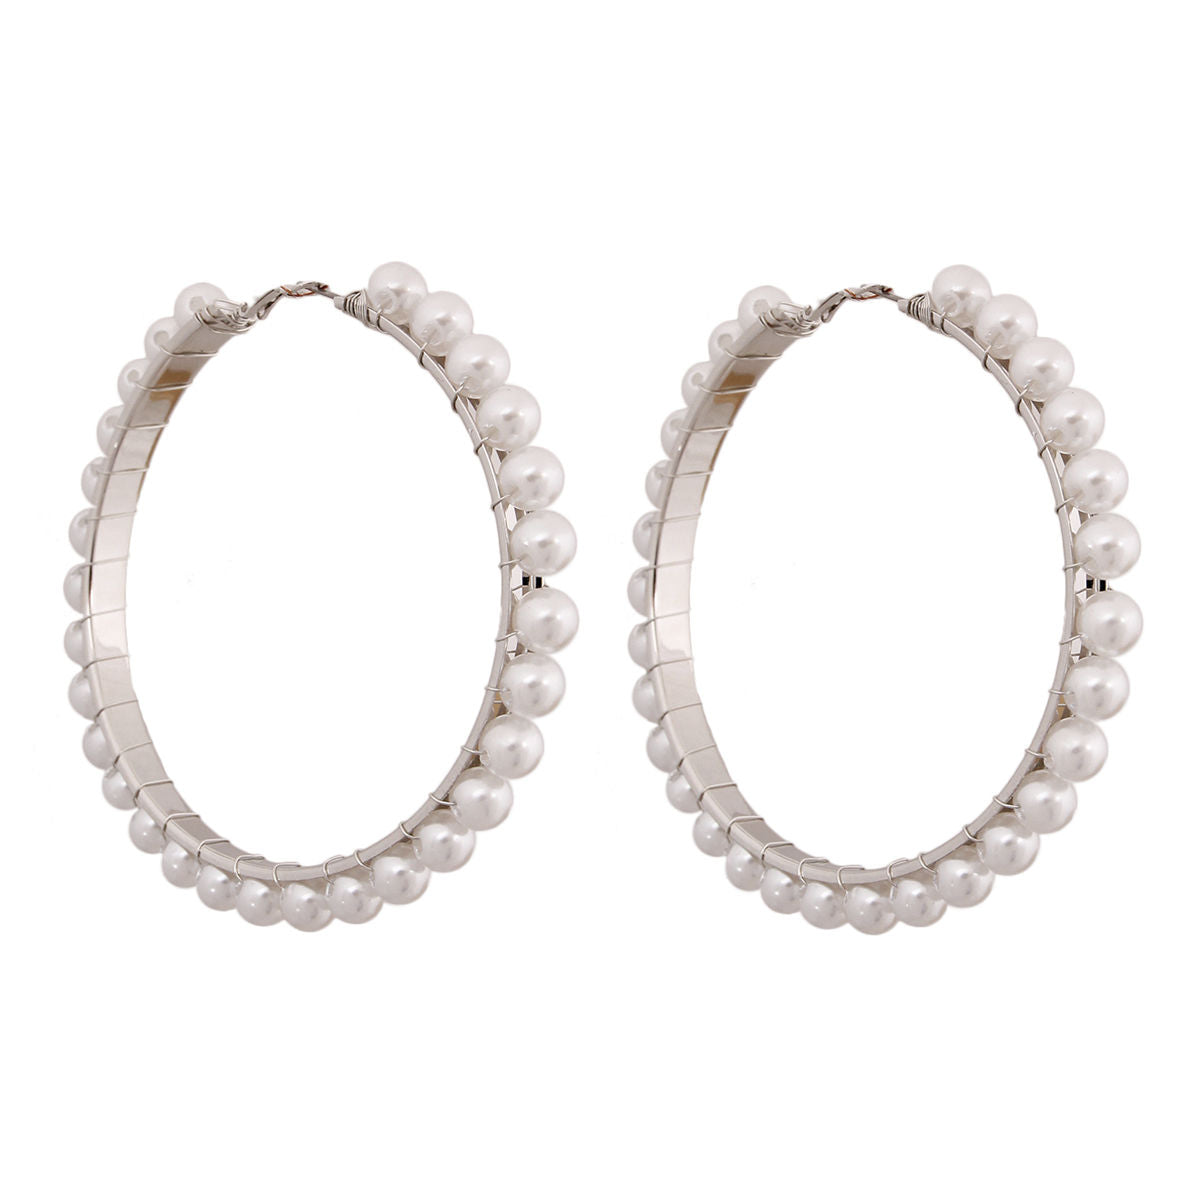 Silver and White Pearl Hoop Earrings